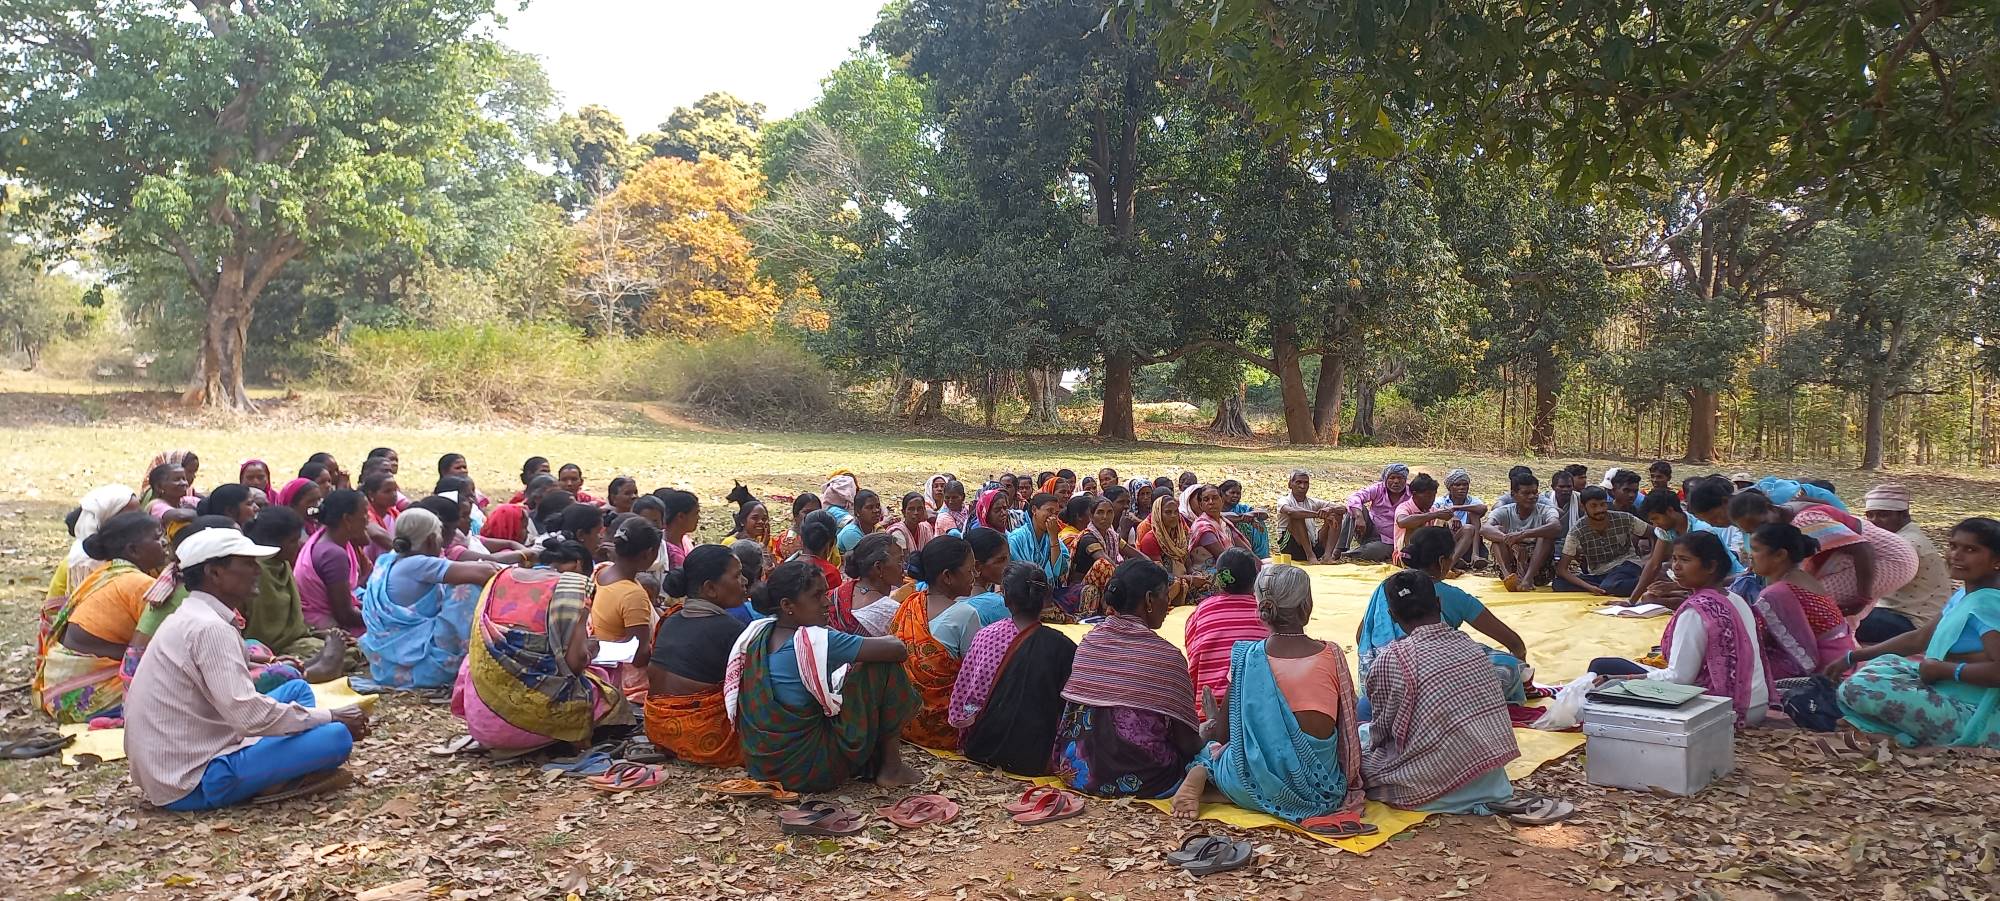 झारखंड: आदिवासी इलाकों में ग्राम सभाएं बचा रही हैं ज़मीनी लोकतंत्र